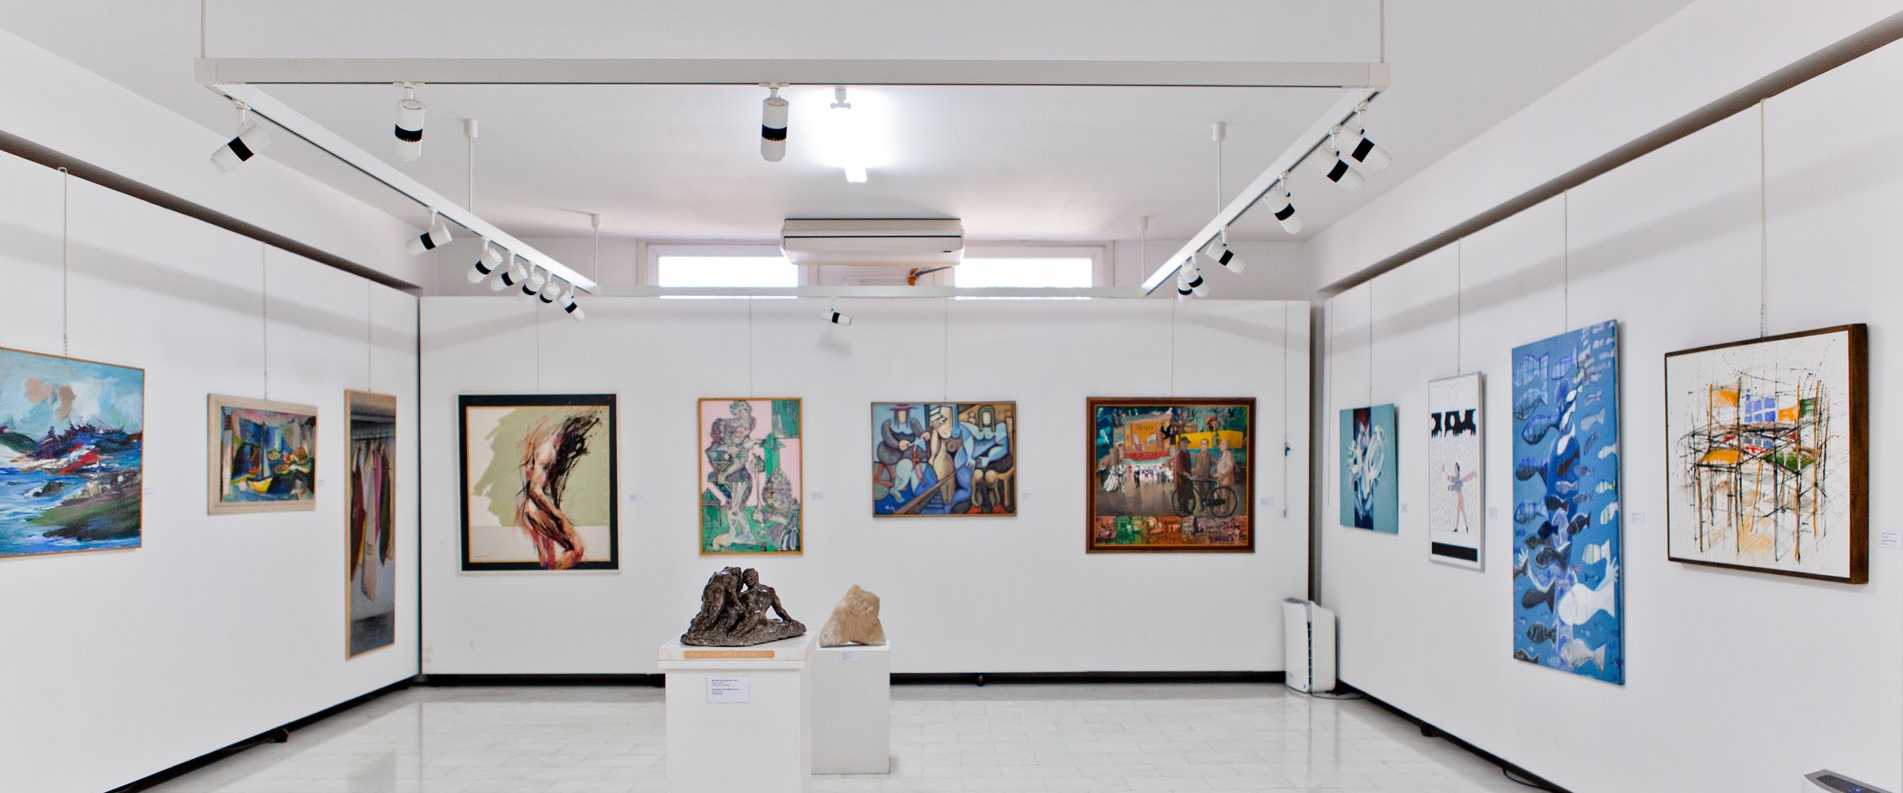 Limassol Municipal Art Gallery